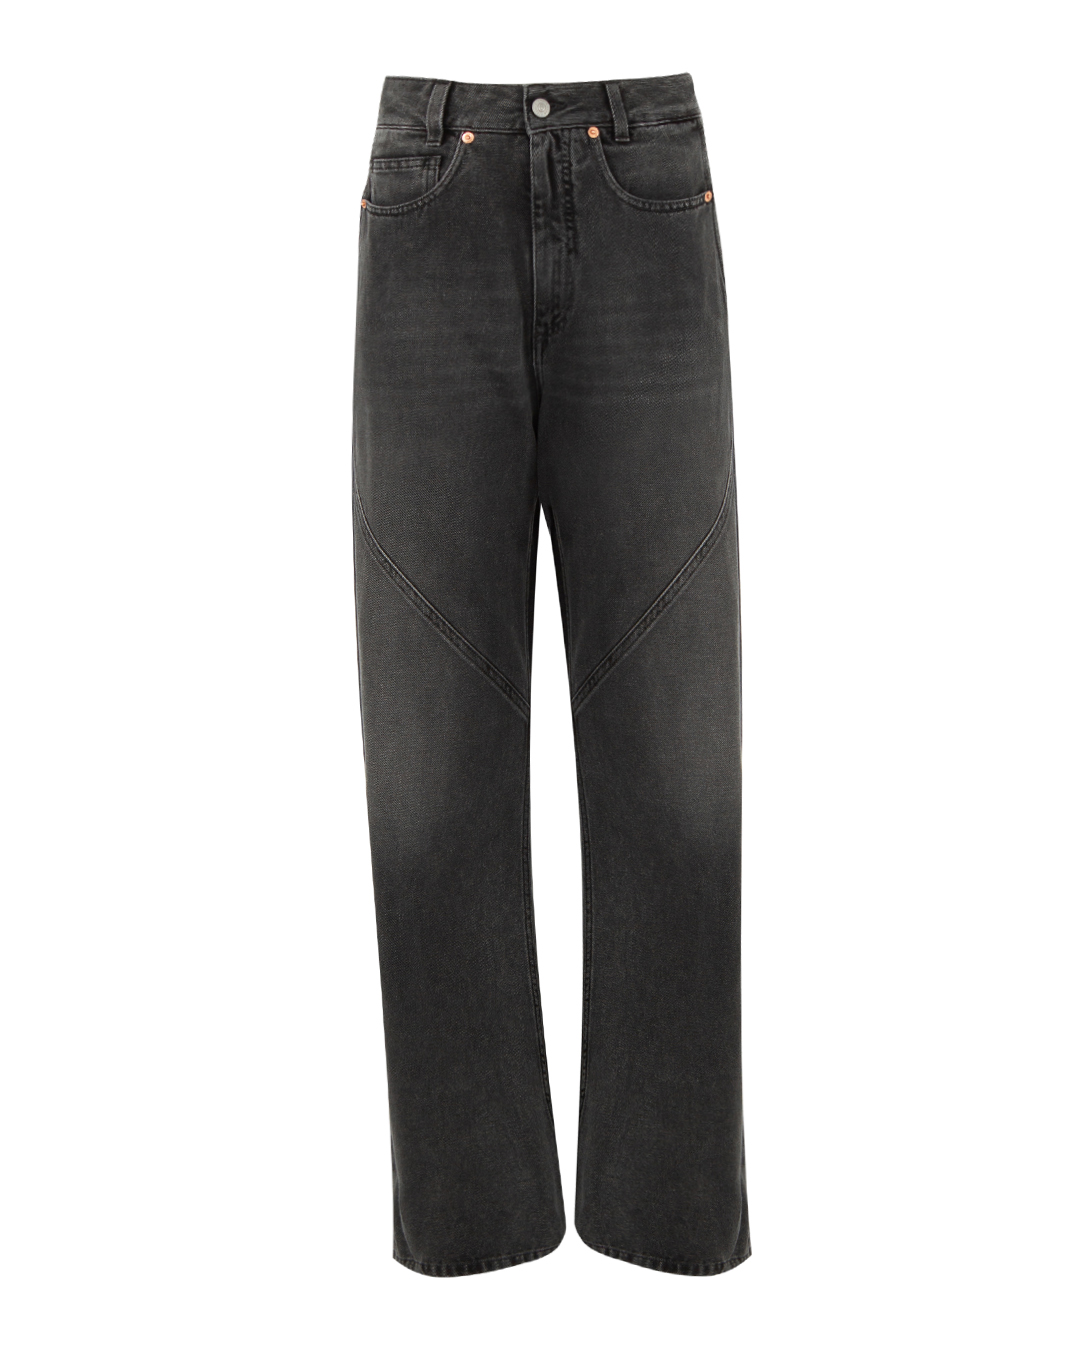 джинсы MM6 Maison Margiela S62LB0160 черный 27, размер 27 - фото 1